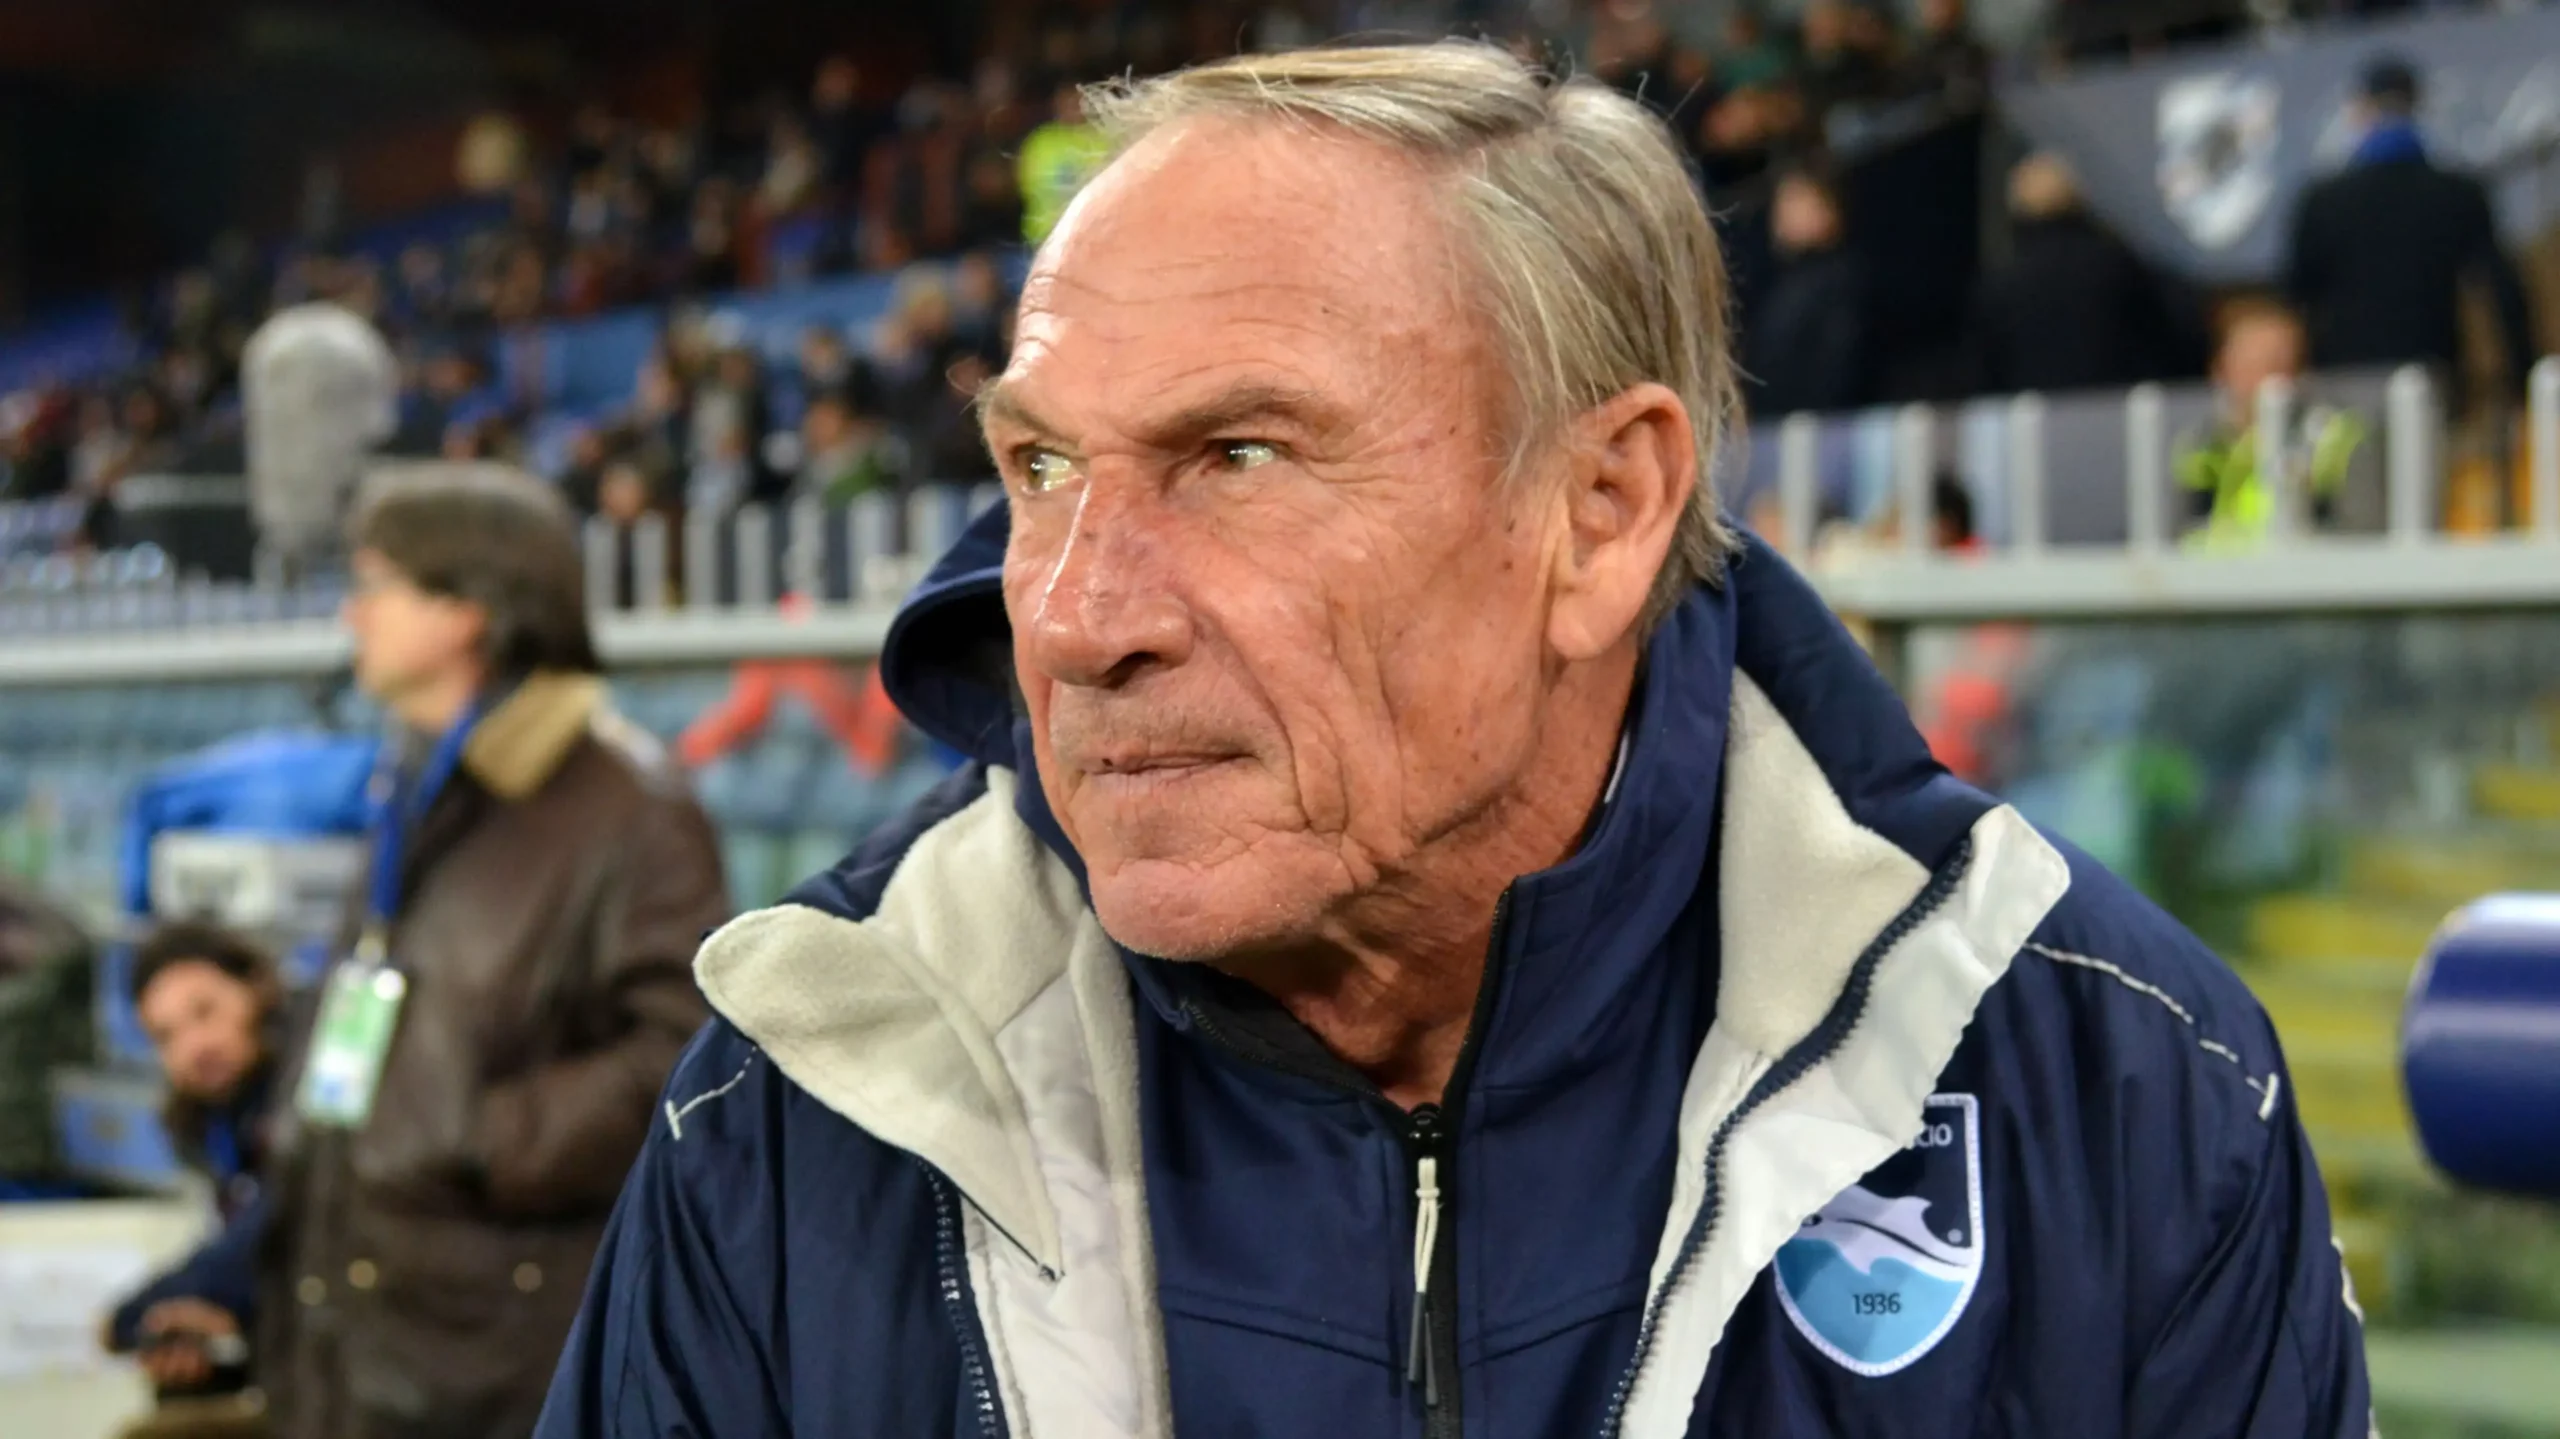 L'allenatore Zdenek Zeman, 76 anni, è stato ricoverato a Pescara per una lieve ischemia transitoria e dovrà assentarsi per alcuni giorni per ulteriori controlli.